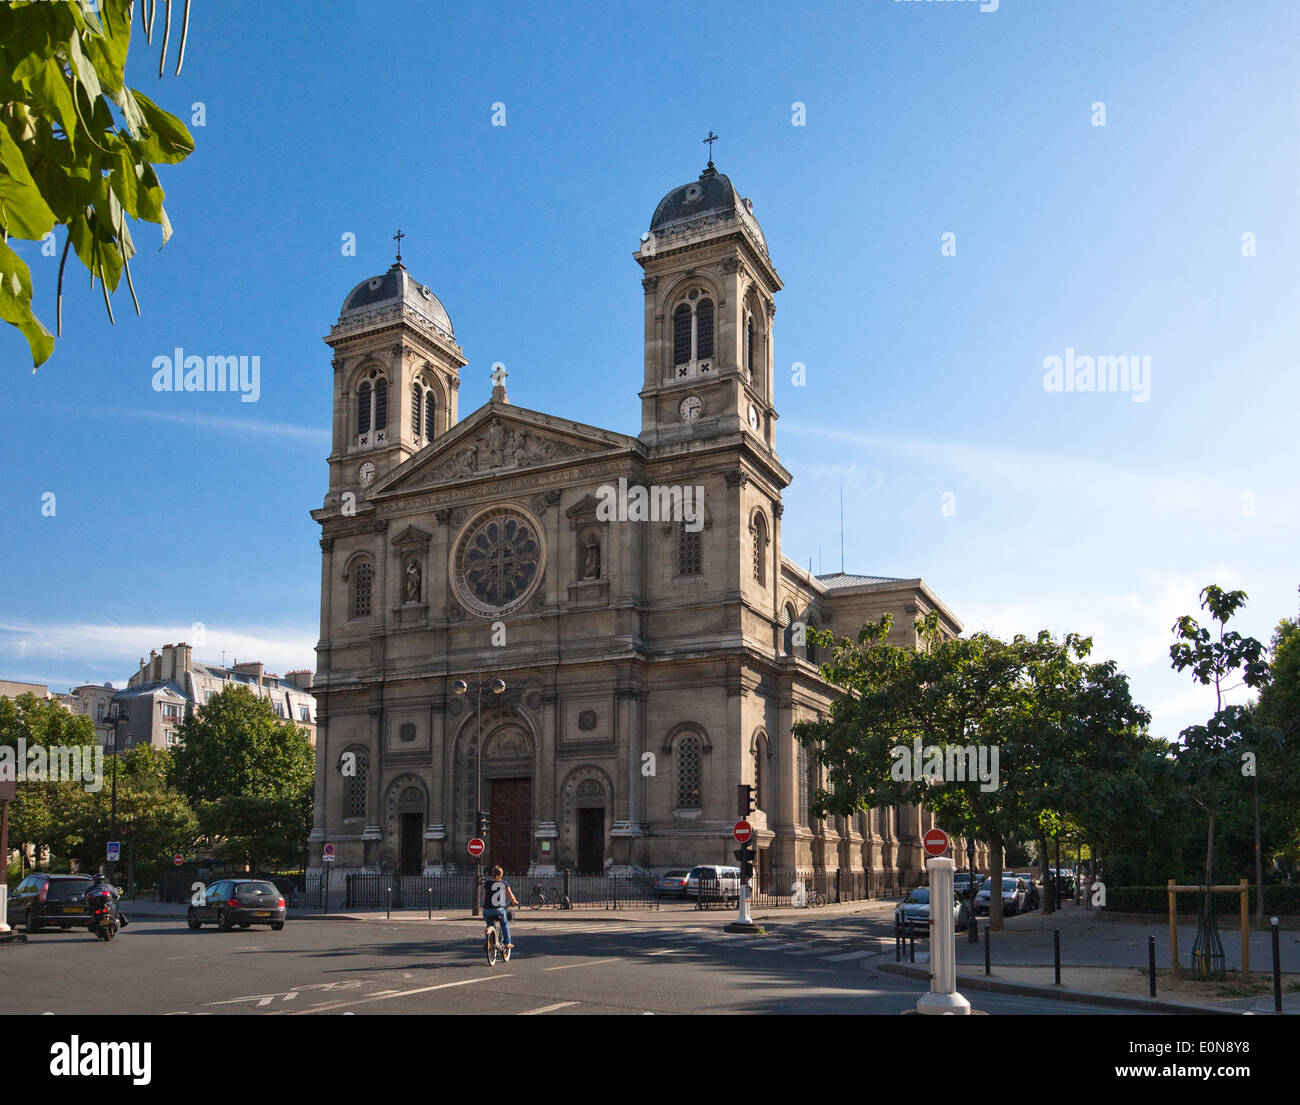 Kirche St. Francois Xavier an der Avenue de Villars, Paris, Frankreich - Church St. Francois Xavier, Paris, France Stock Photo